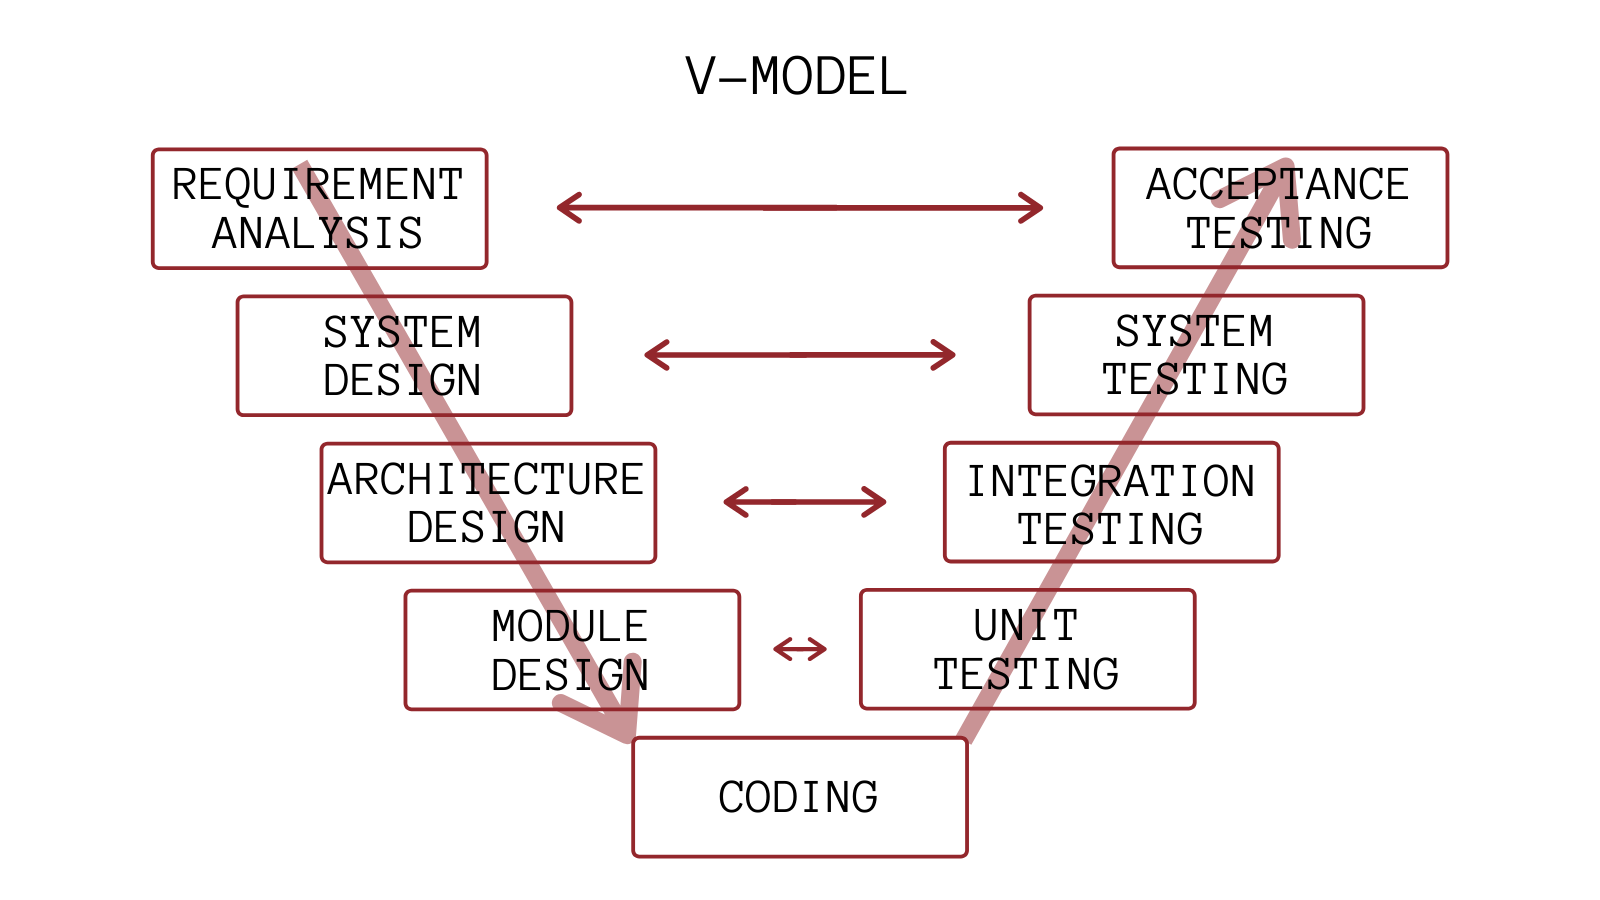 V Model V Model For Software Development V Model Advantages Images